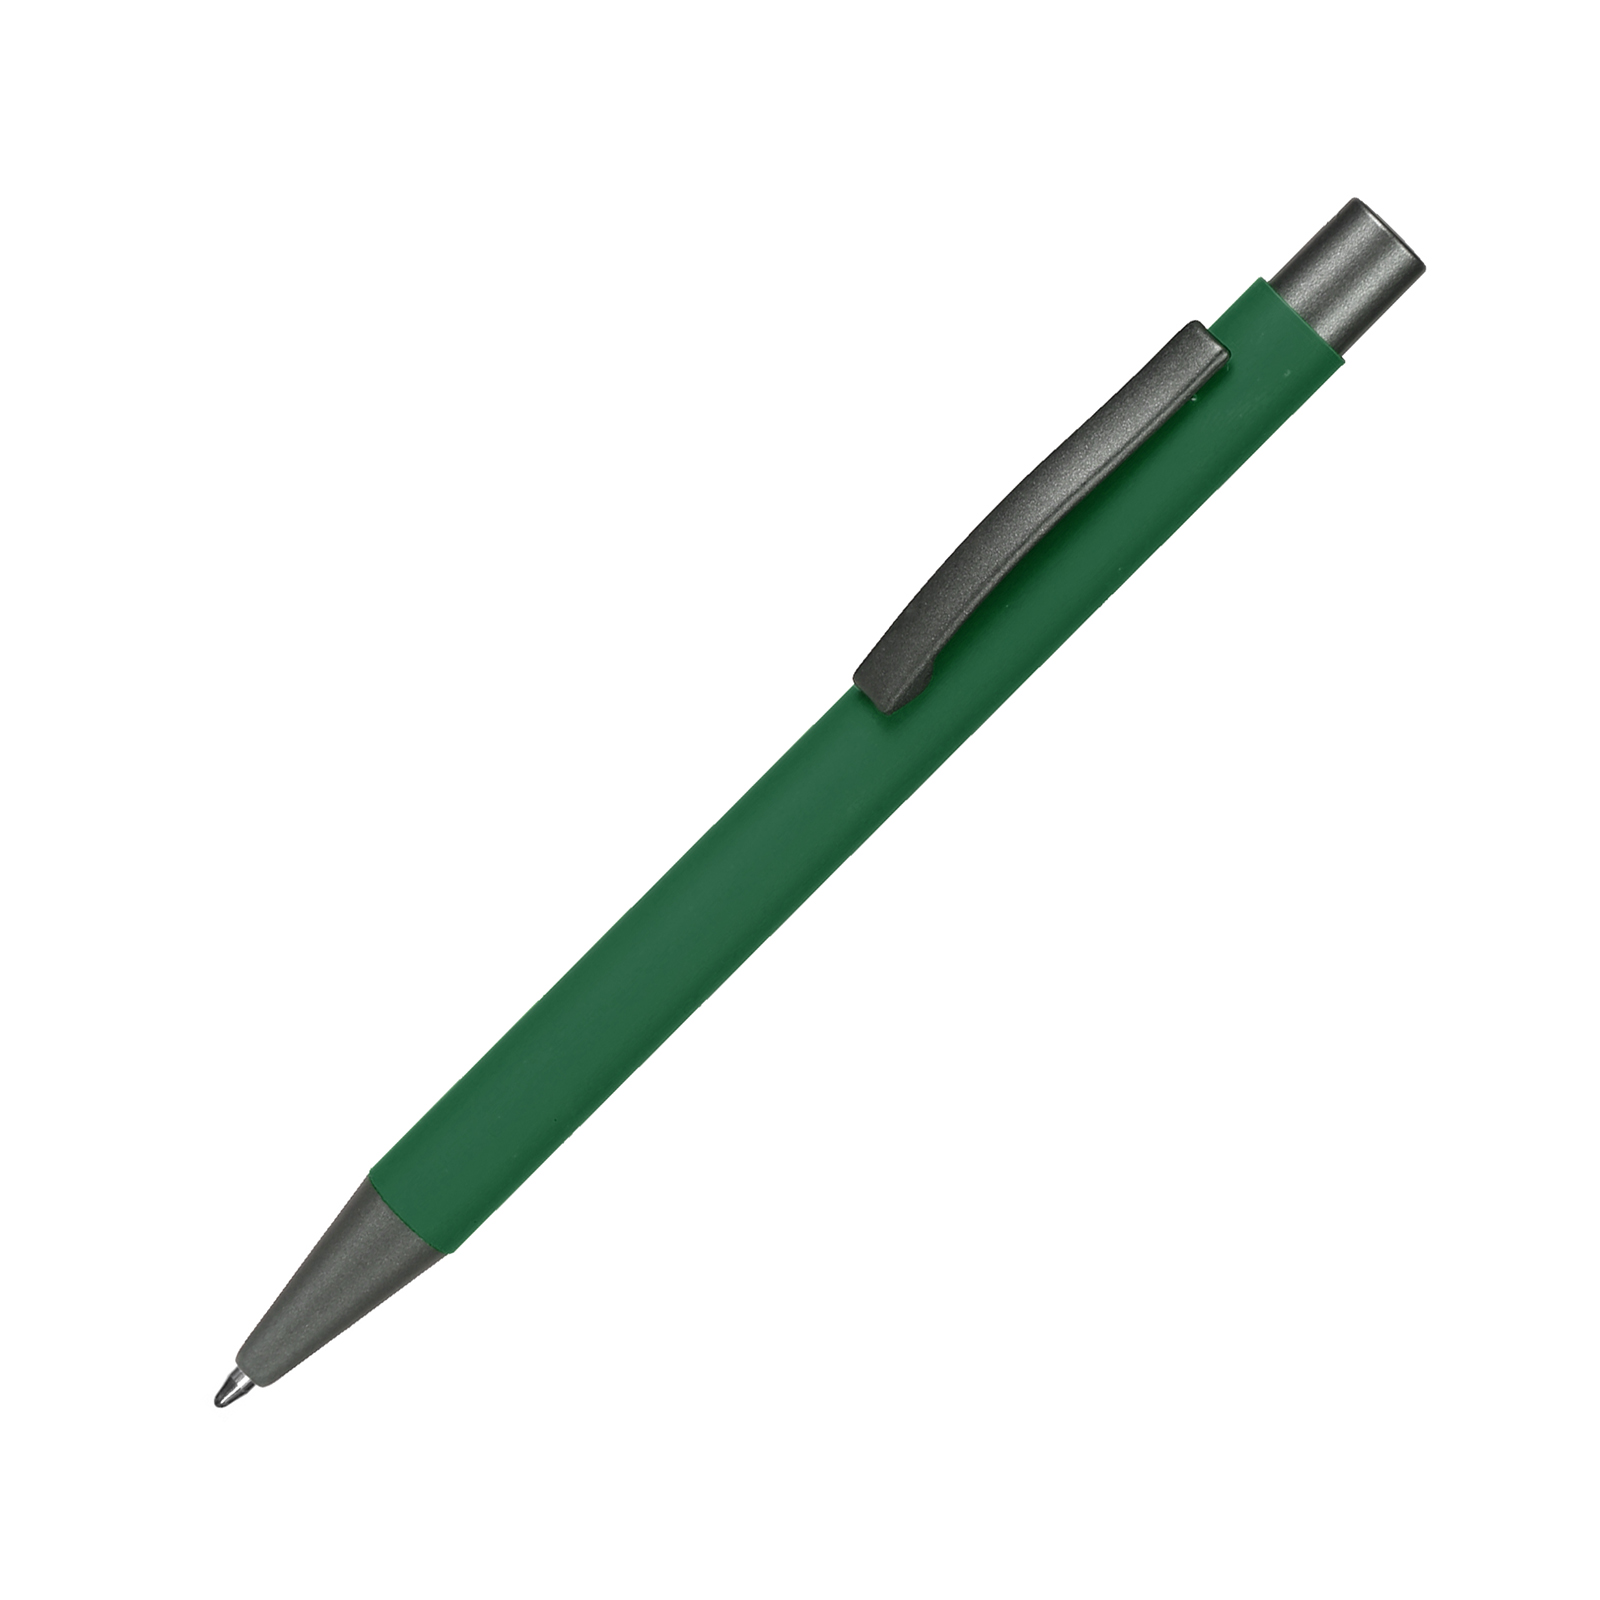 Ручка с логотипом матовая металлическая Monaco